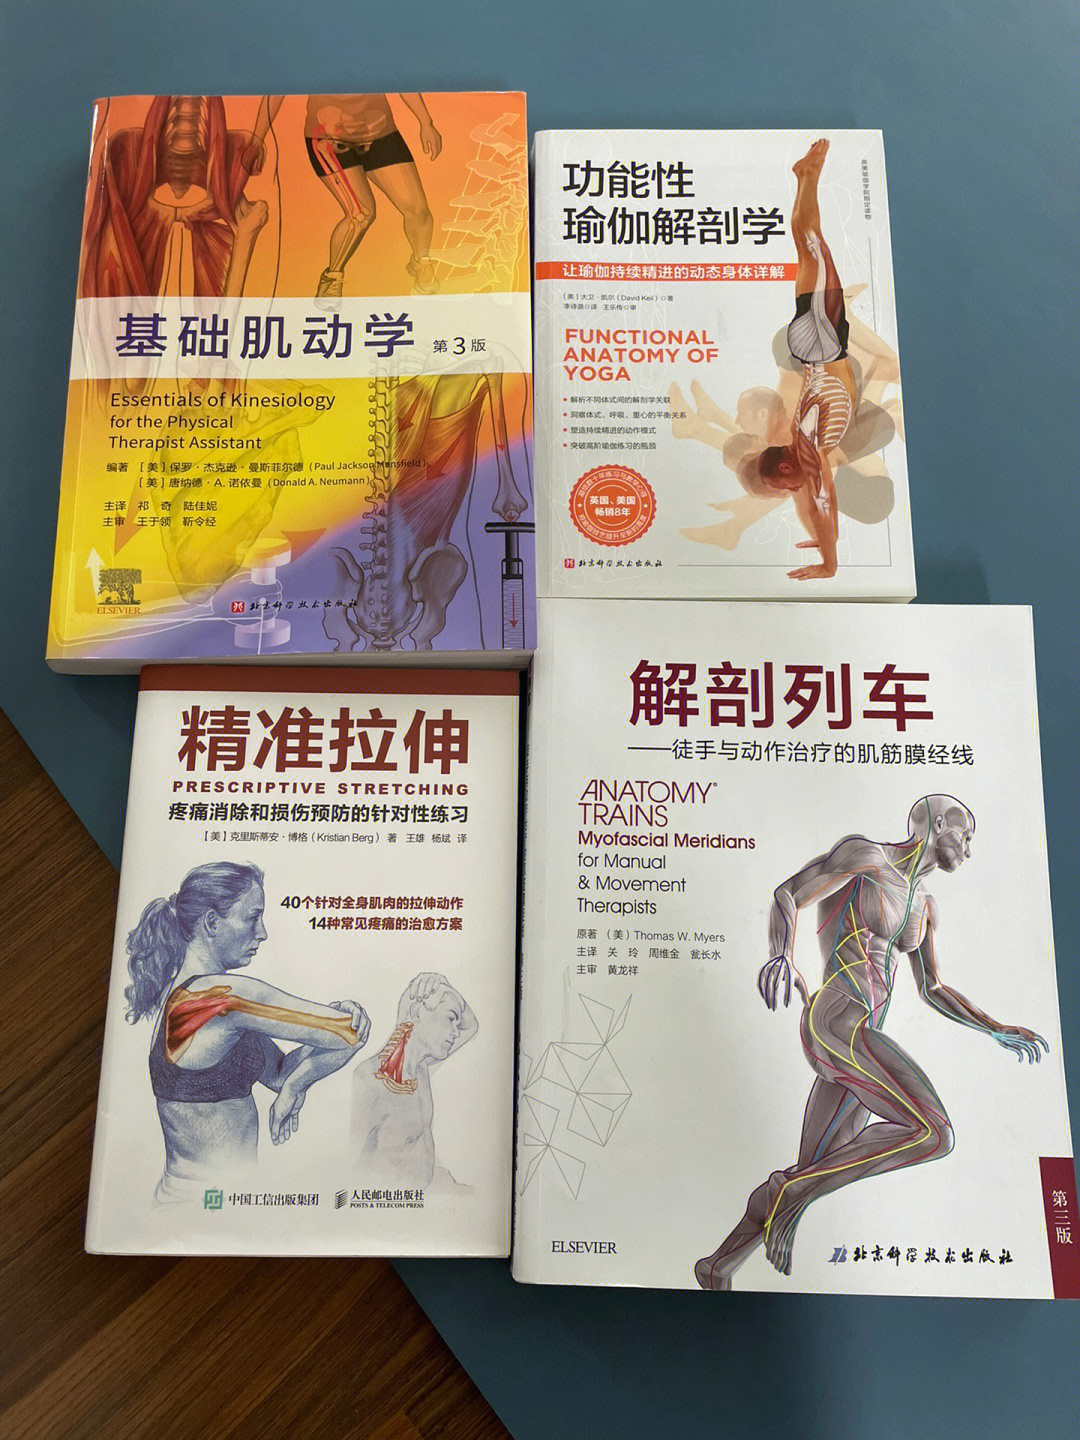 解剖列车:应该是这四本中最难的,一本研究肌筋膜的书,把肌肉比作珍珠